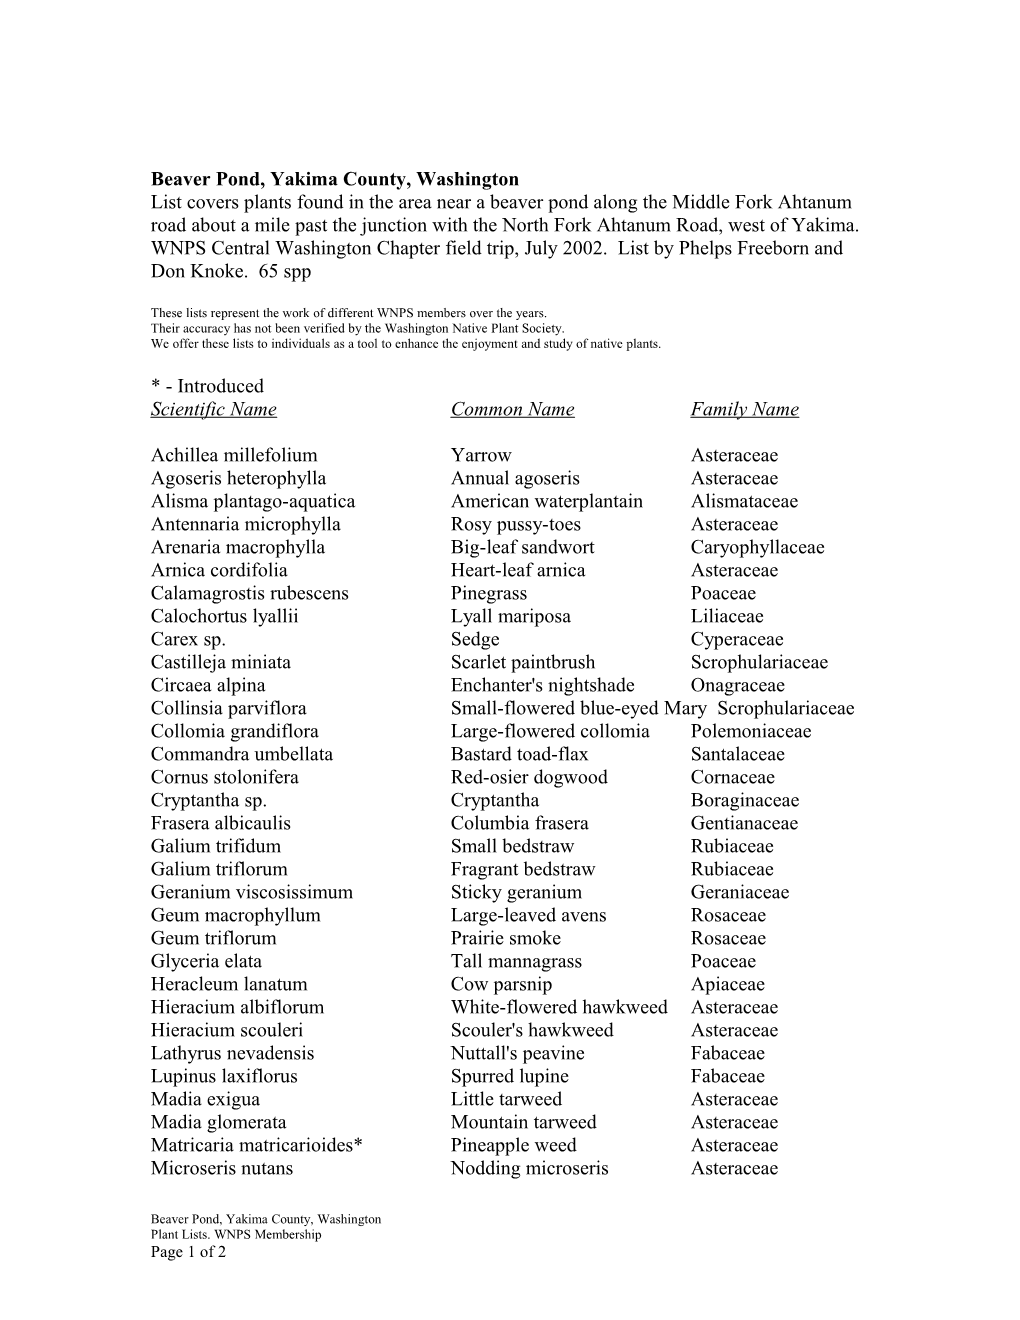 Vascular Plant List s1